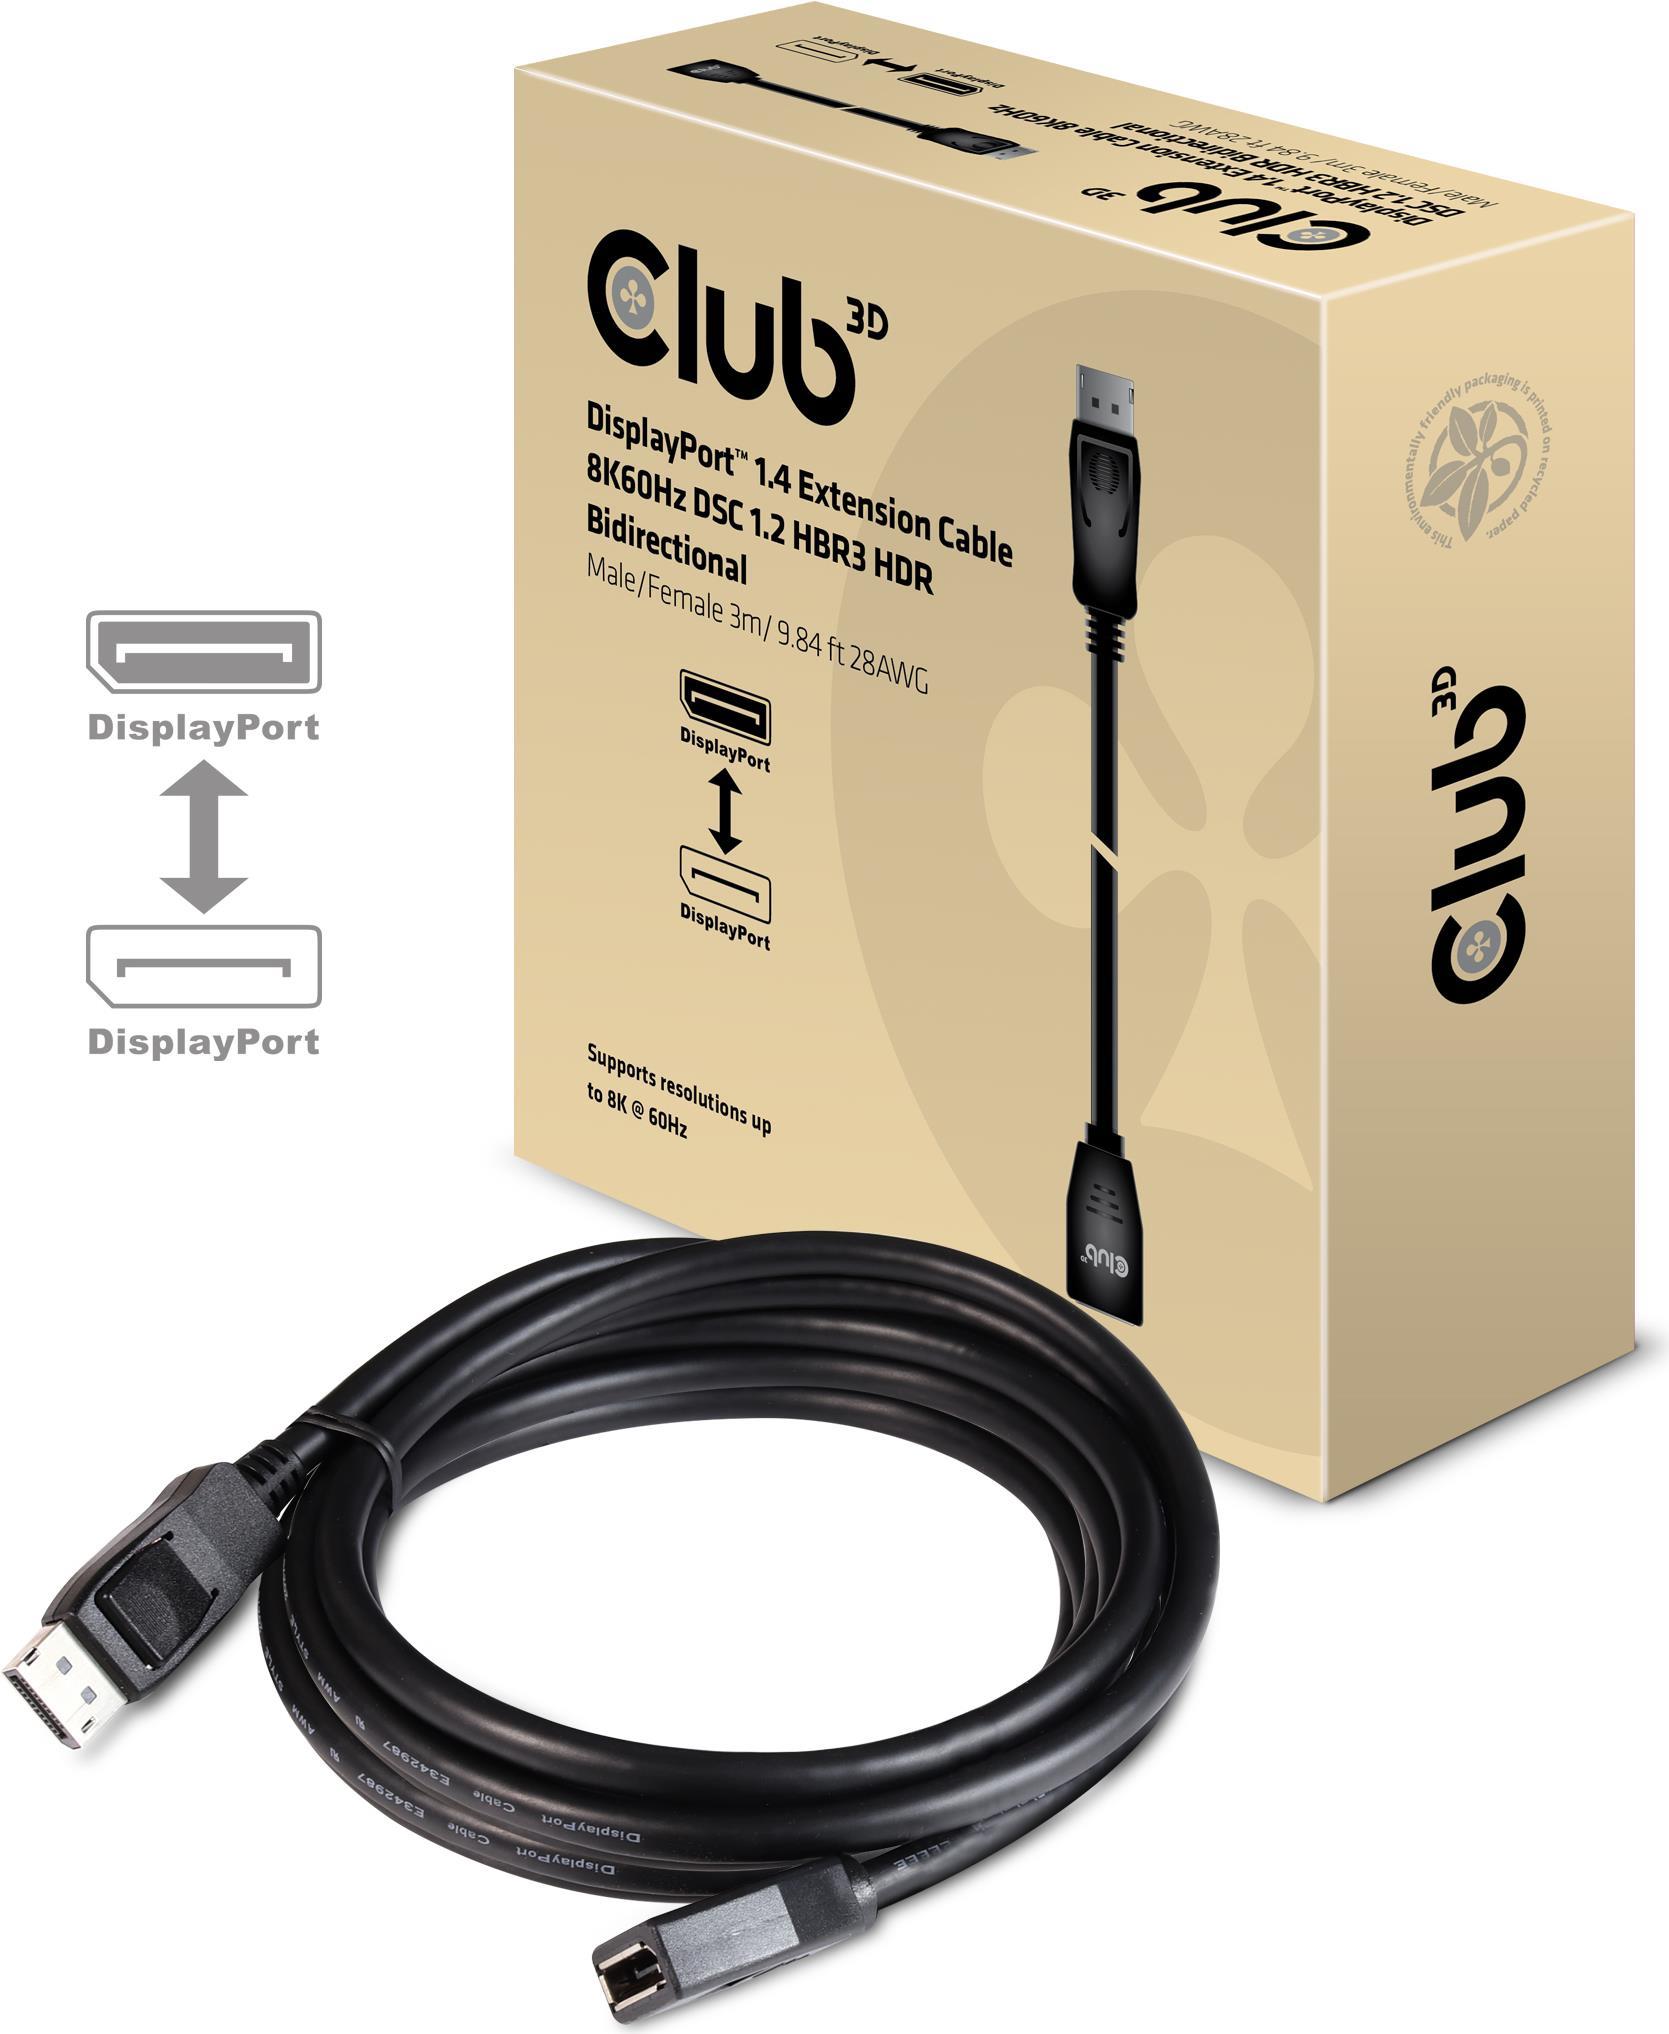 Club 3D DisplayPort 1.4 Verlängerungskabel 8K60Hz DSC1.2 HBR3 HDR Bidirektional Stecker/Buchse 3m